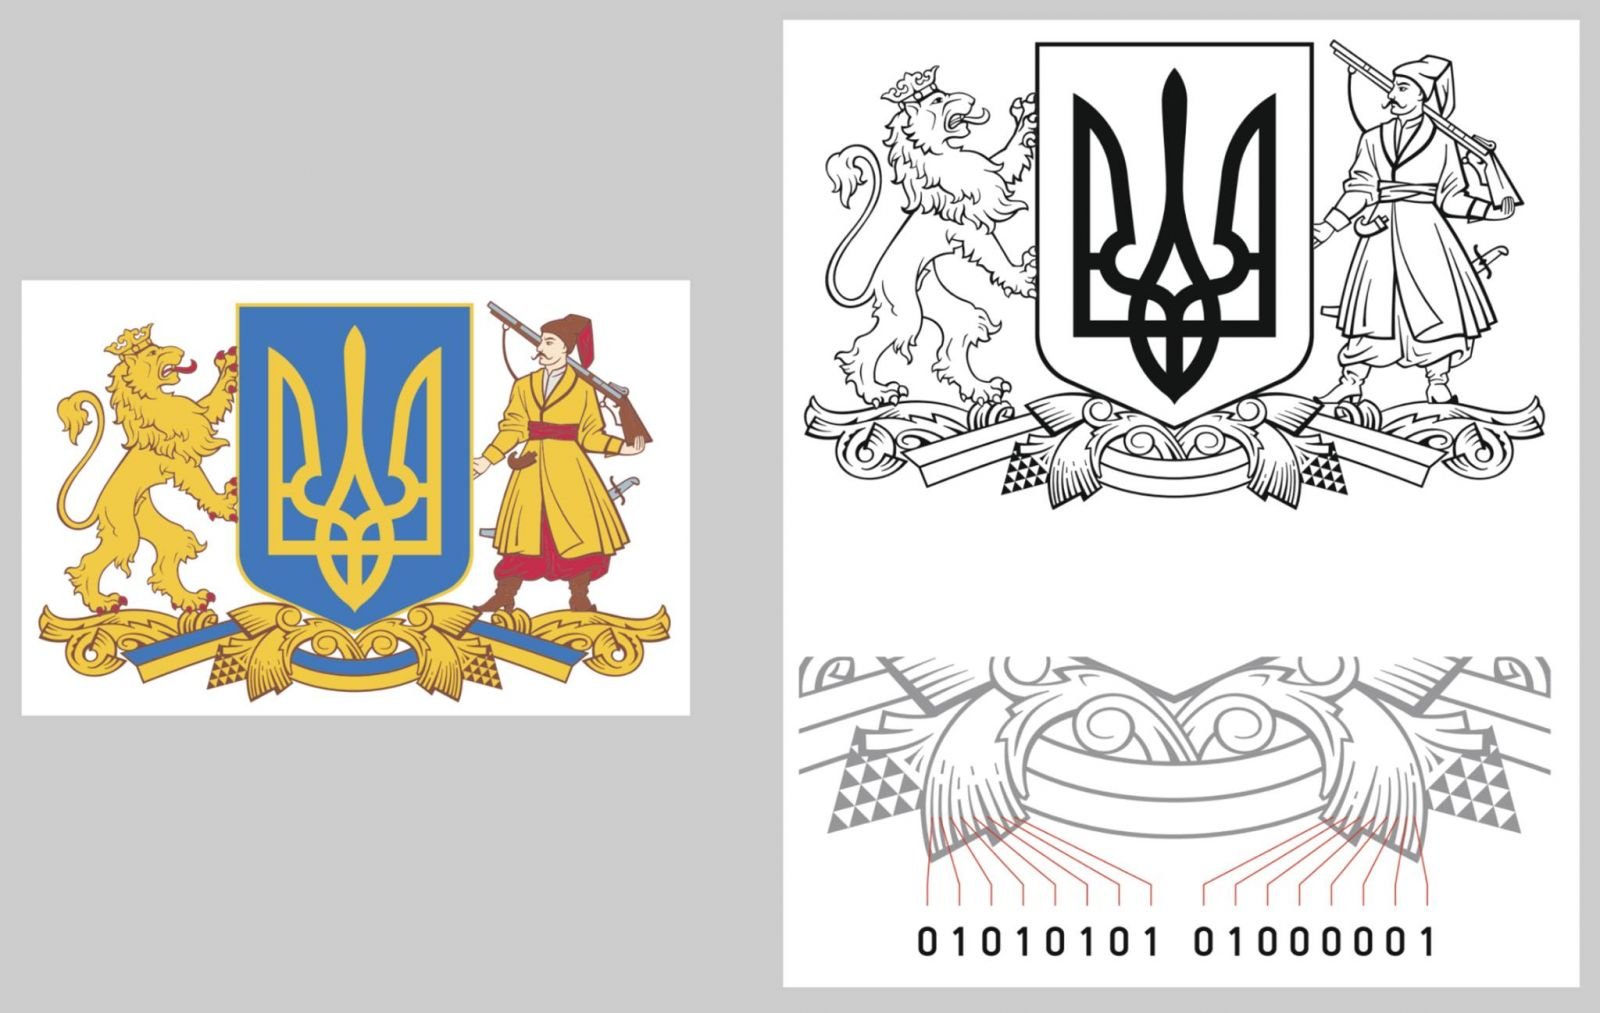 Бинарный код и девушка с веткой оливы — участники конкурса показали, каким мог быть большой герб Украины